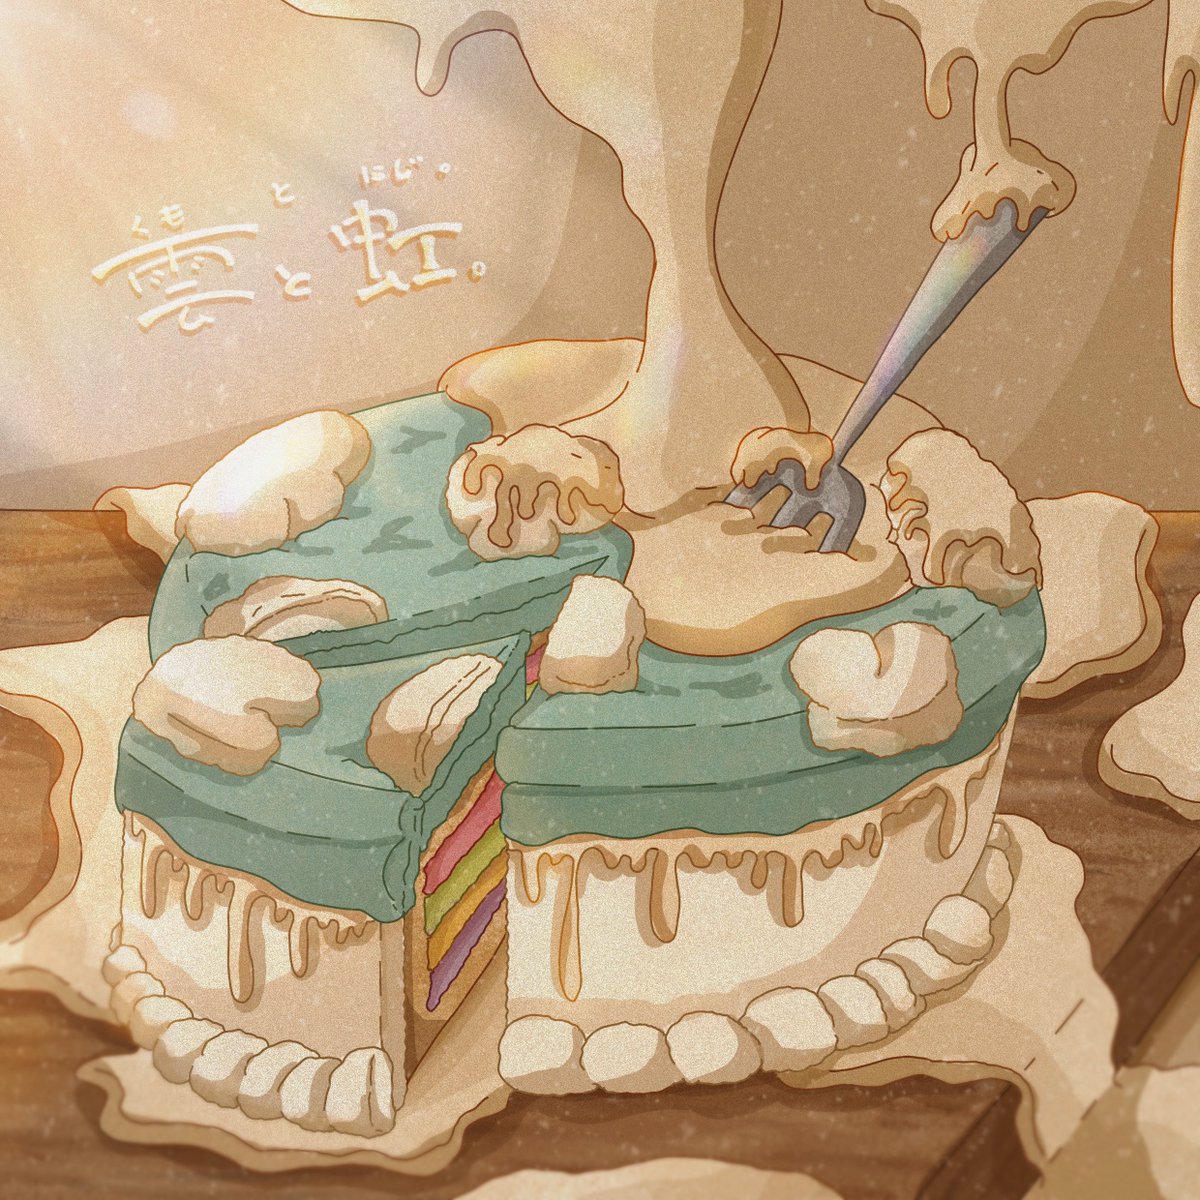 「ホールケーキいっぱい#イラスト #ケーキ 」|こでらひなのイラスト